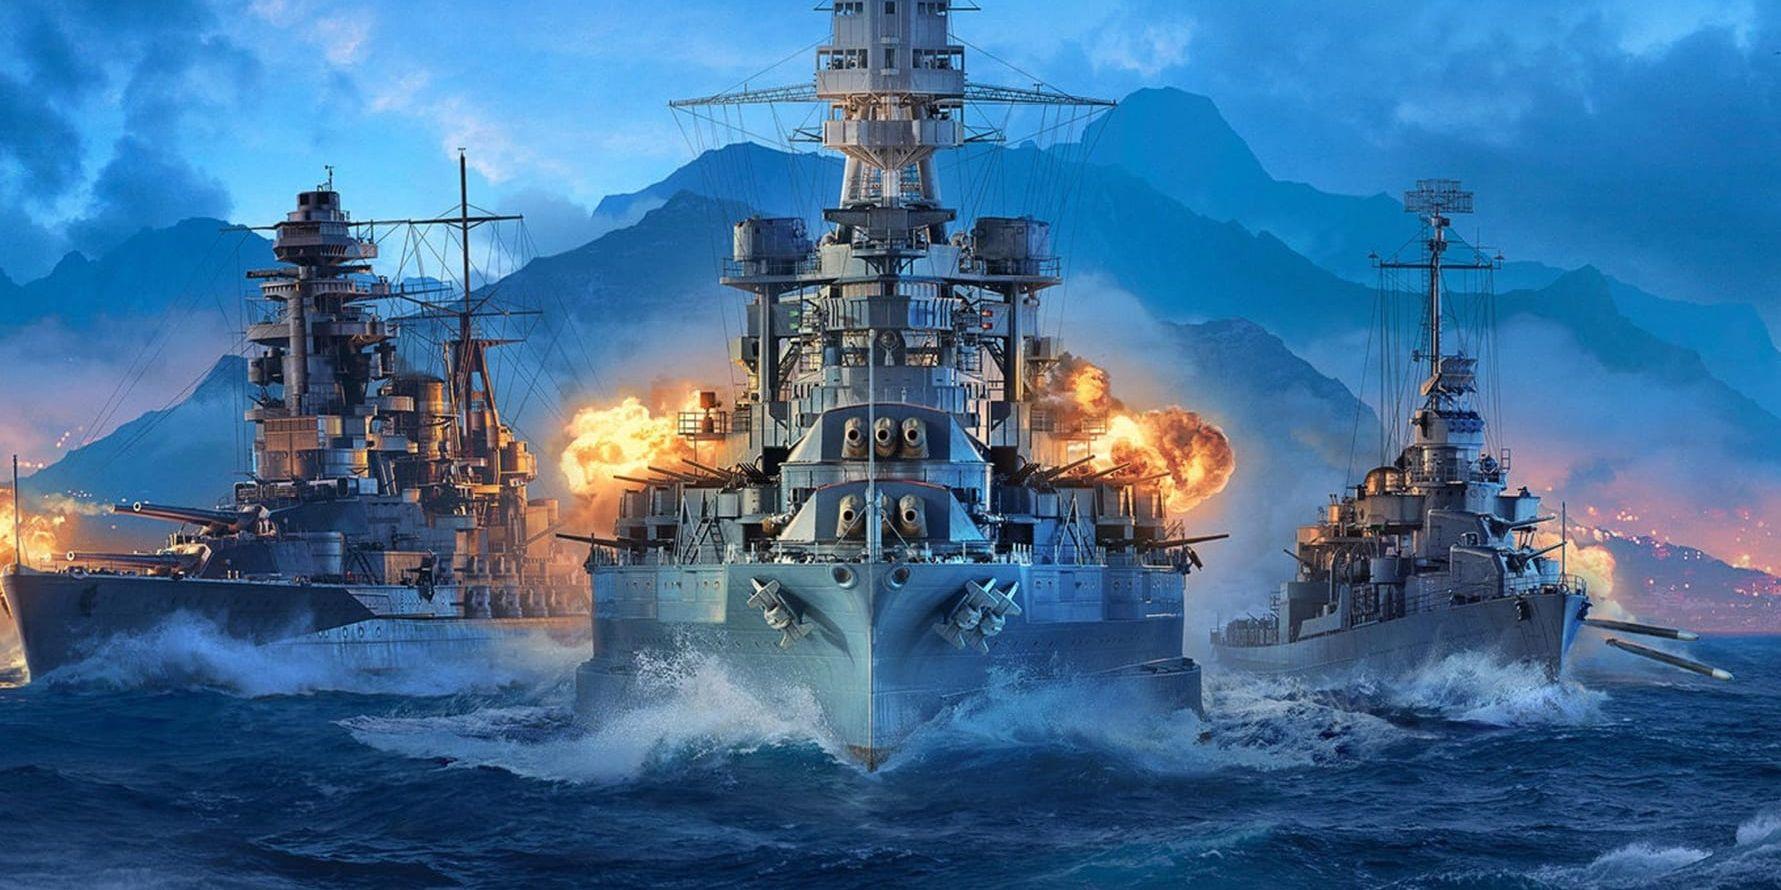 "World of warships: Legends" släpps nästa år, enligt utvecklaren. Pressbild.